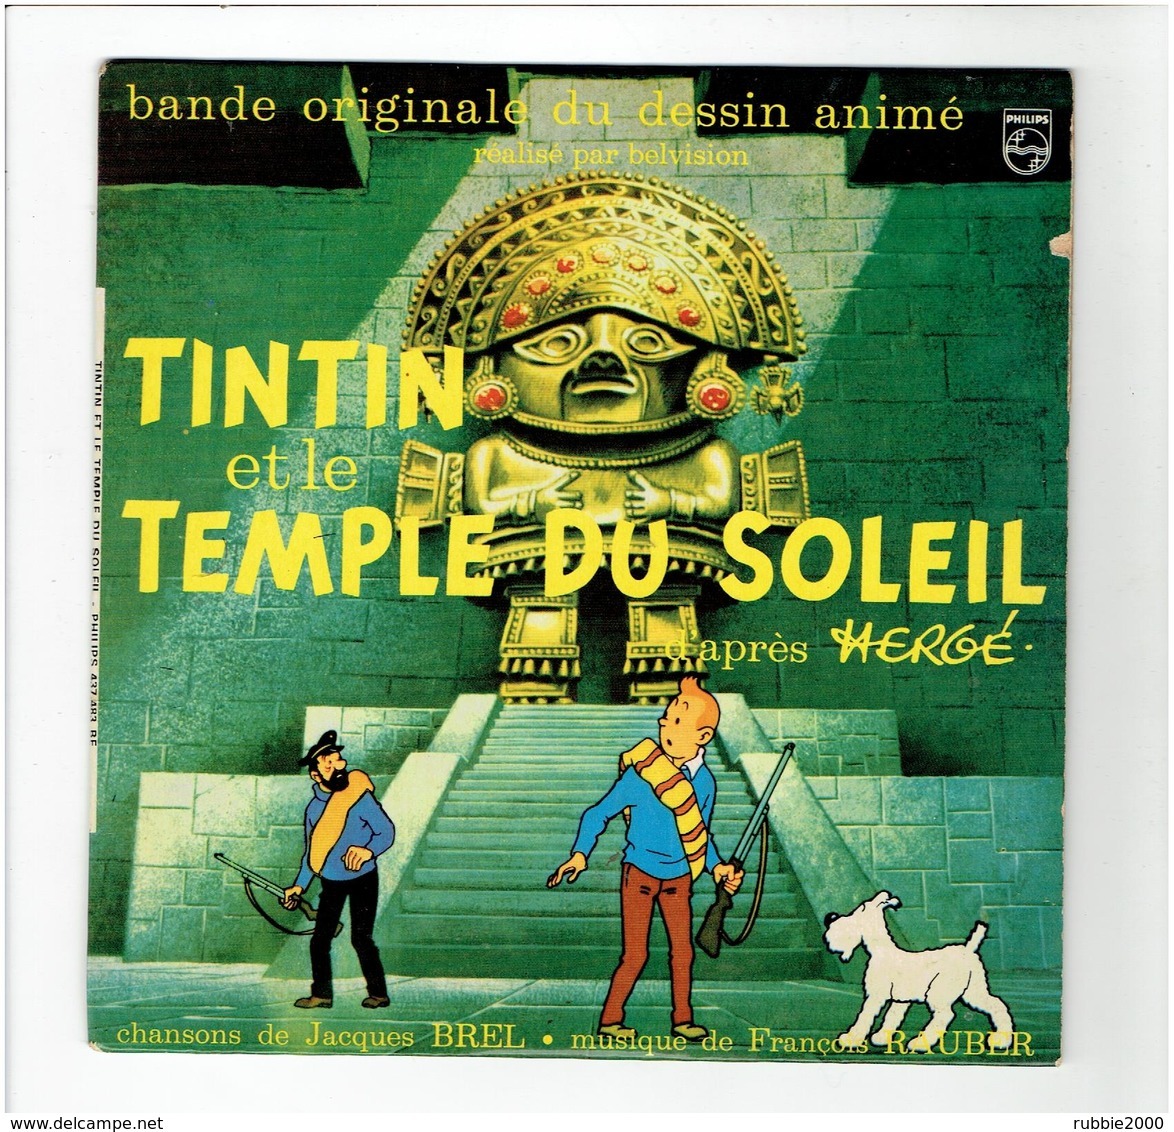 TINTIN ET LE TEMPLE DU SOLEIL 1969 HERGE 45 TOURS PHILIPS 4 TITRES DONT 2 MUSIQUE ET PAROLES DE JACQUES BREL - Disques & CD